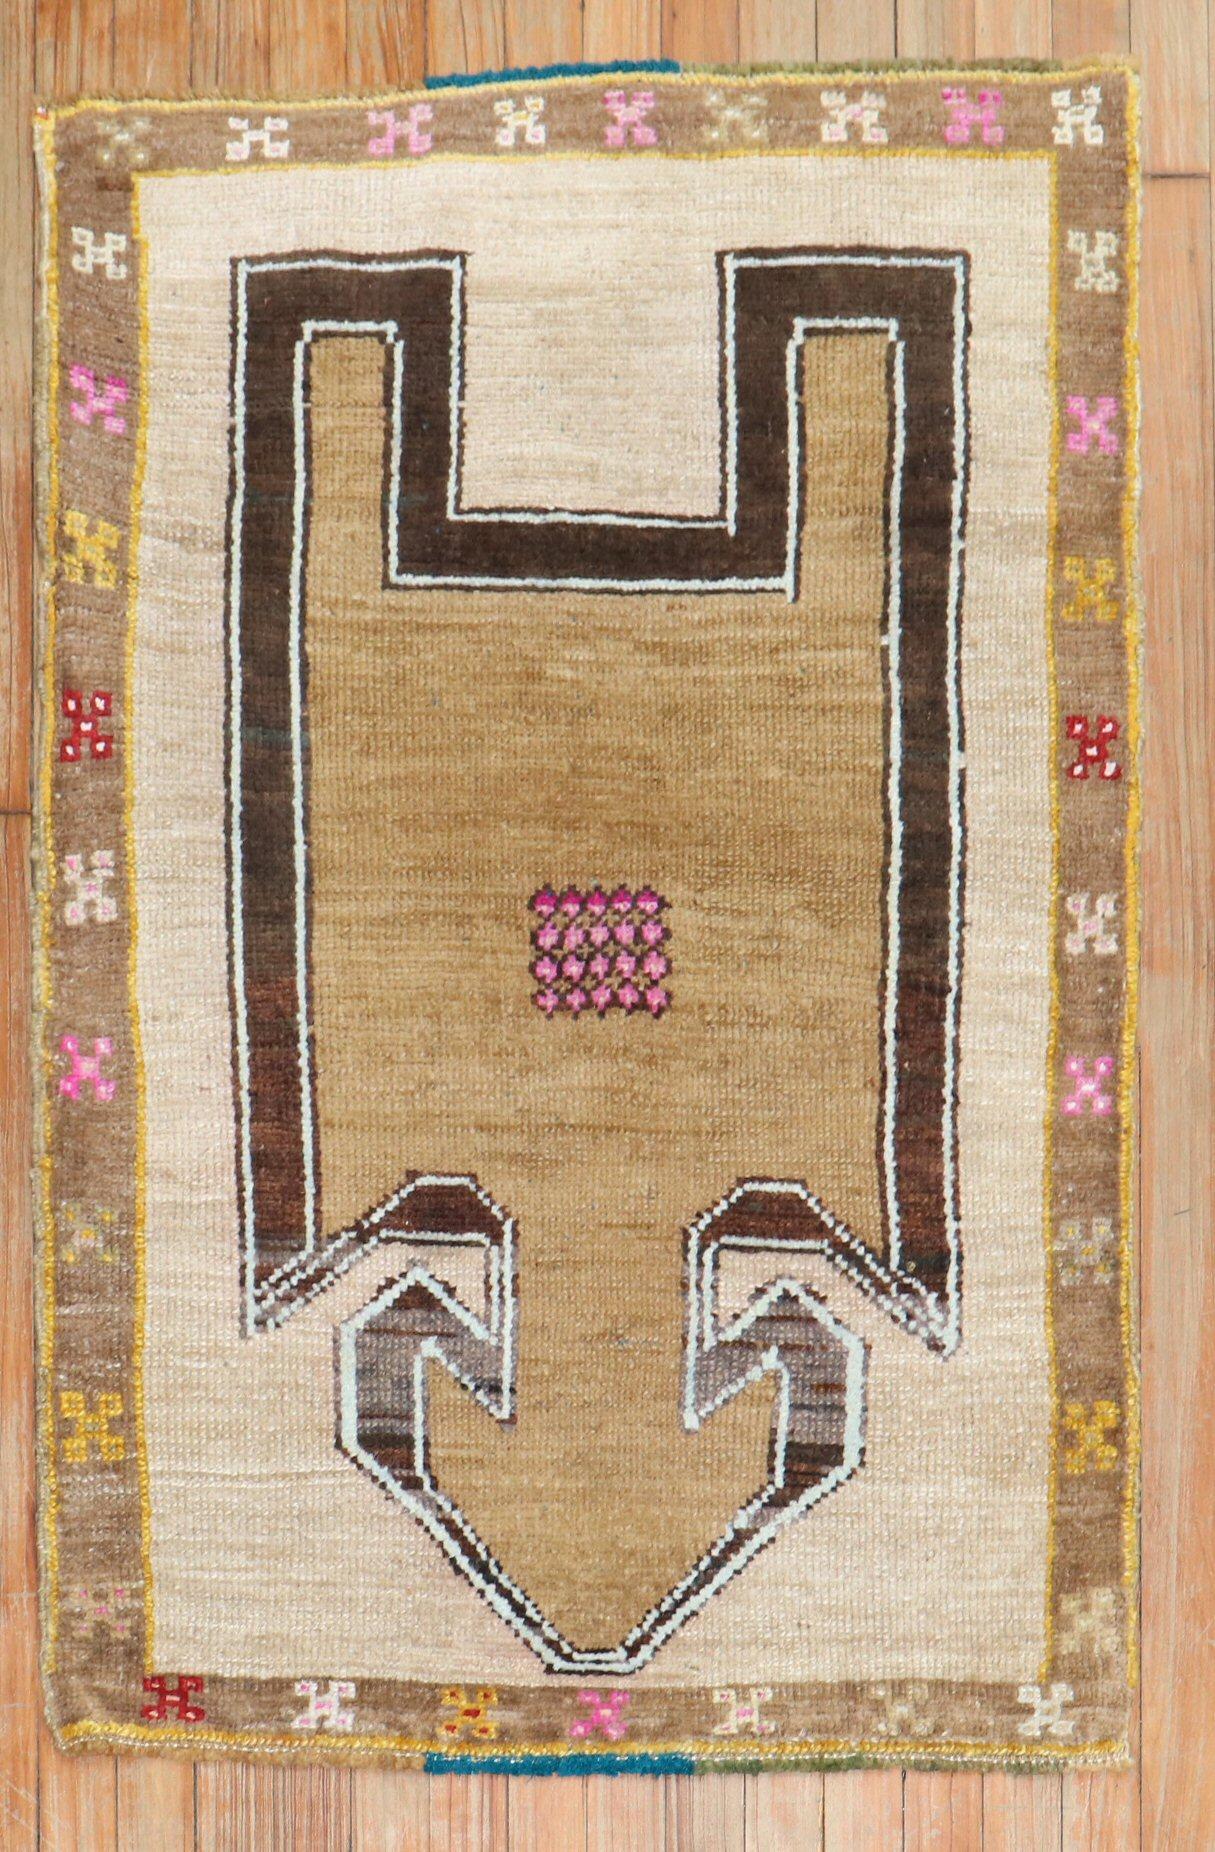 Einzigartiger eklektischer türkischer Gebetsteppich aus der Mitte des 20. Jahrhunderts aus Anatolien

Maße: 2'8